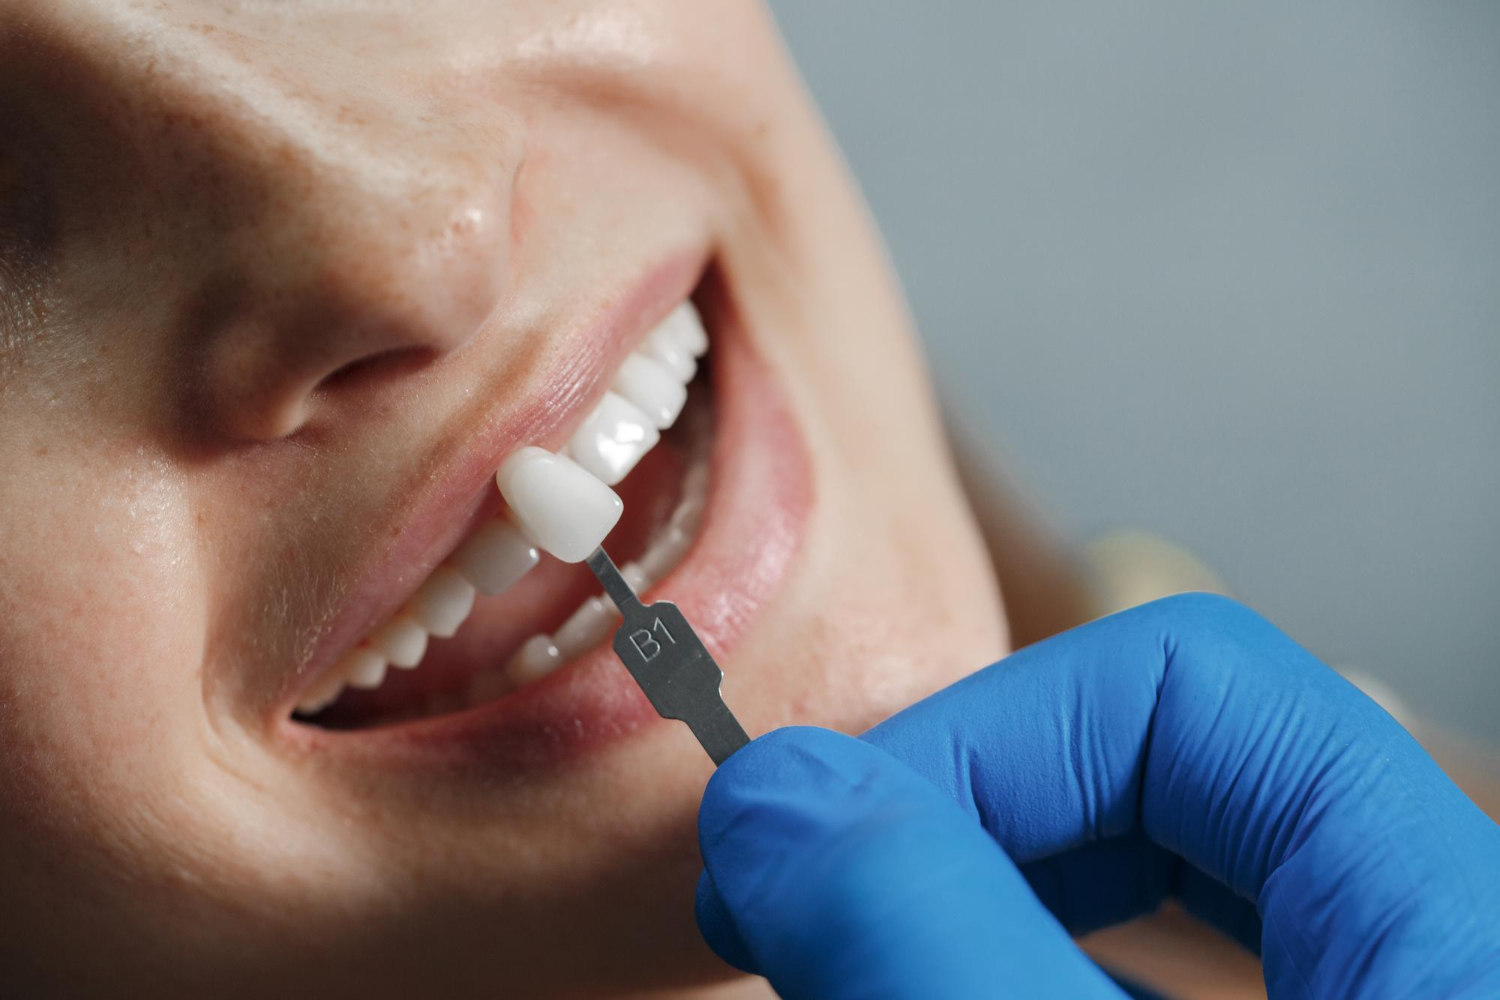 dentista-blanqueando-dientes